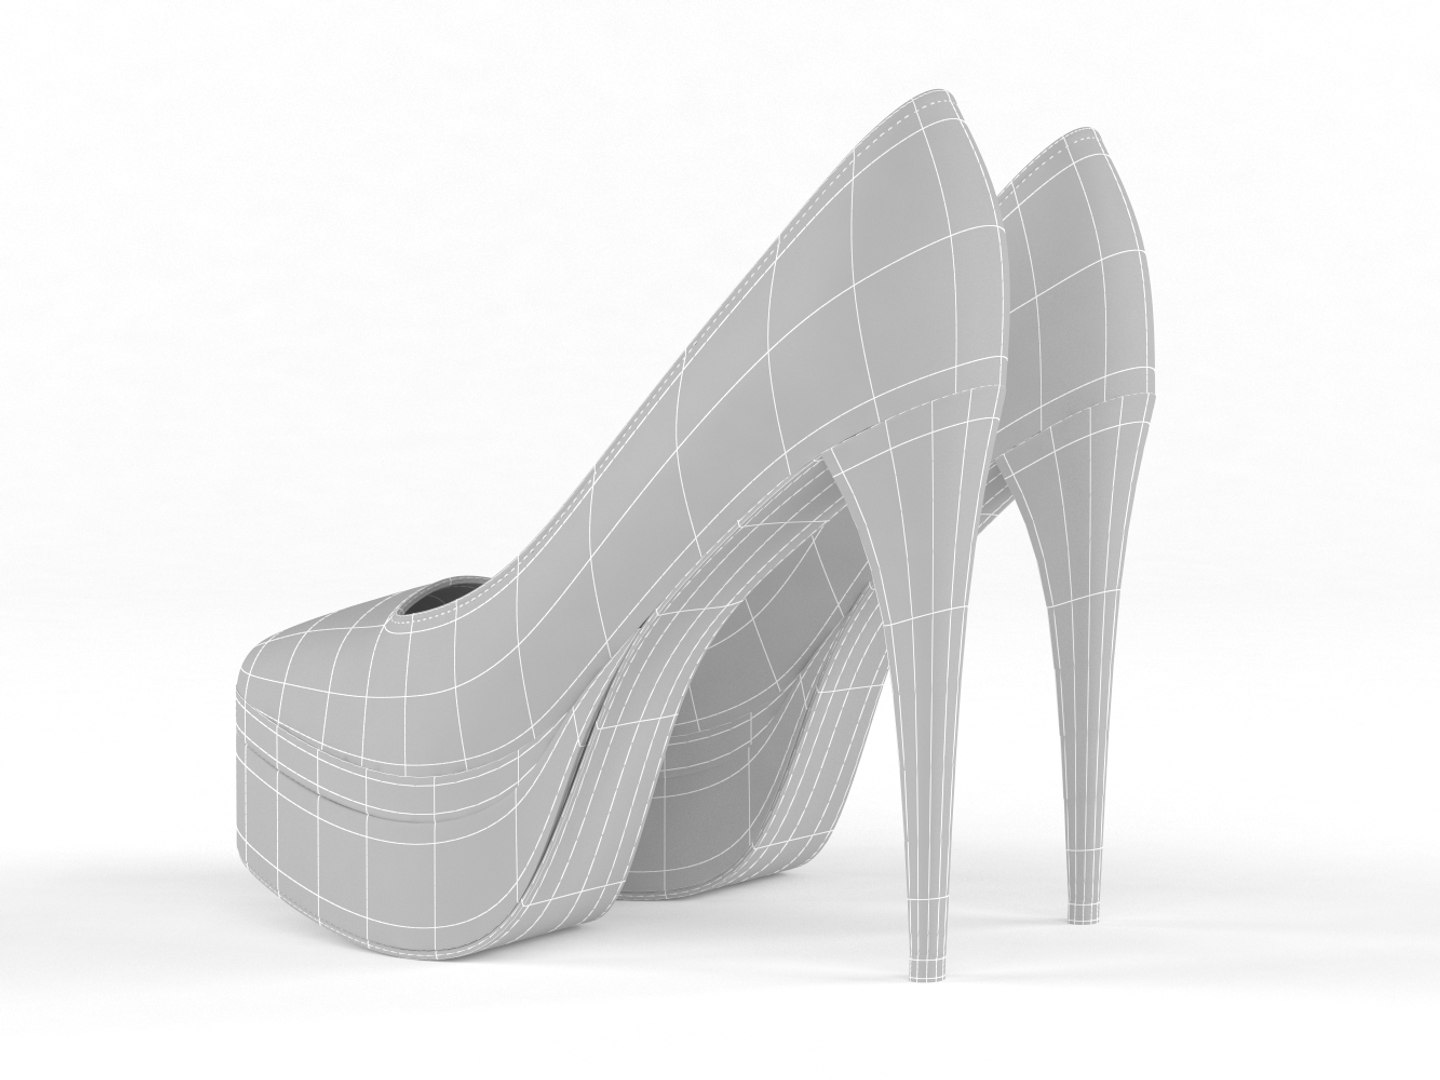 Realistic Heels Women Shoes 3D Model - TurboSquid 1515411